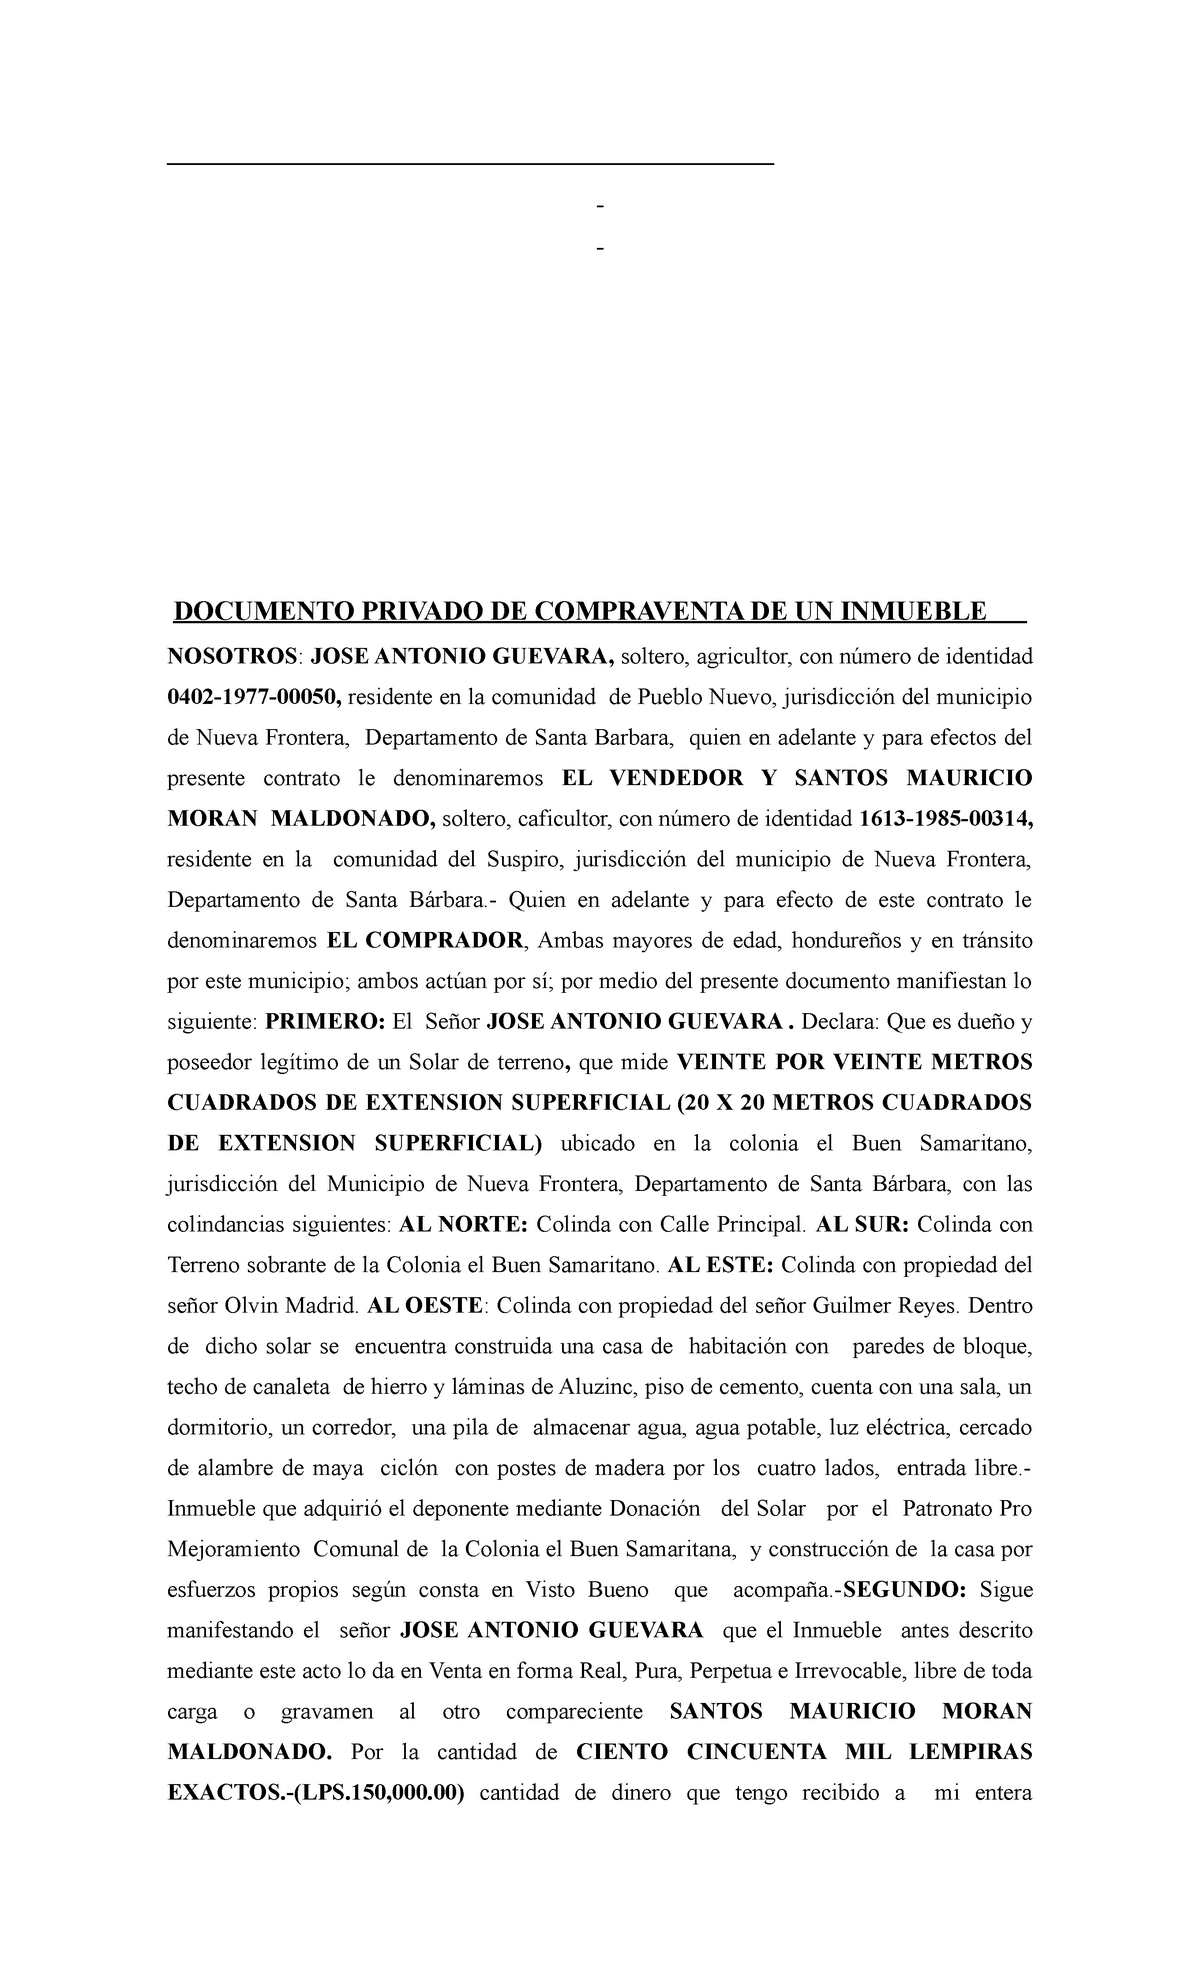 Documento De Compra Y Venta De Un Inmueble En El Area Notarial Documento Privado De 3295